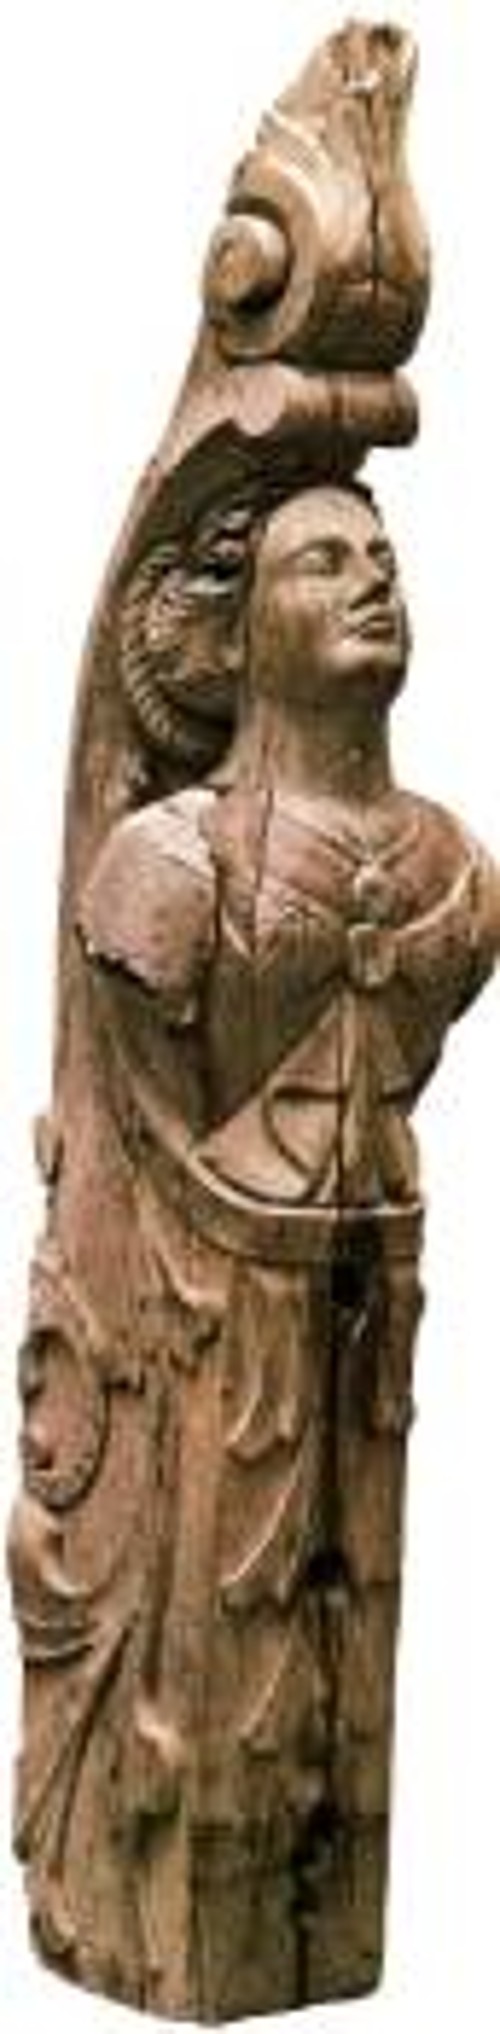 Ακρόπρωρο μικρού σφακιανού καραβιού (Ιστορικό Μουσείο Ηρακλείου Κρήτης)